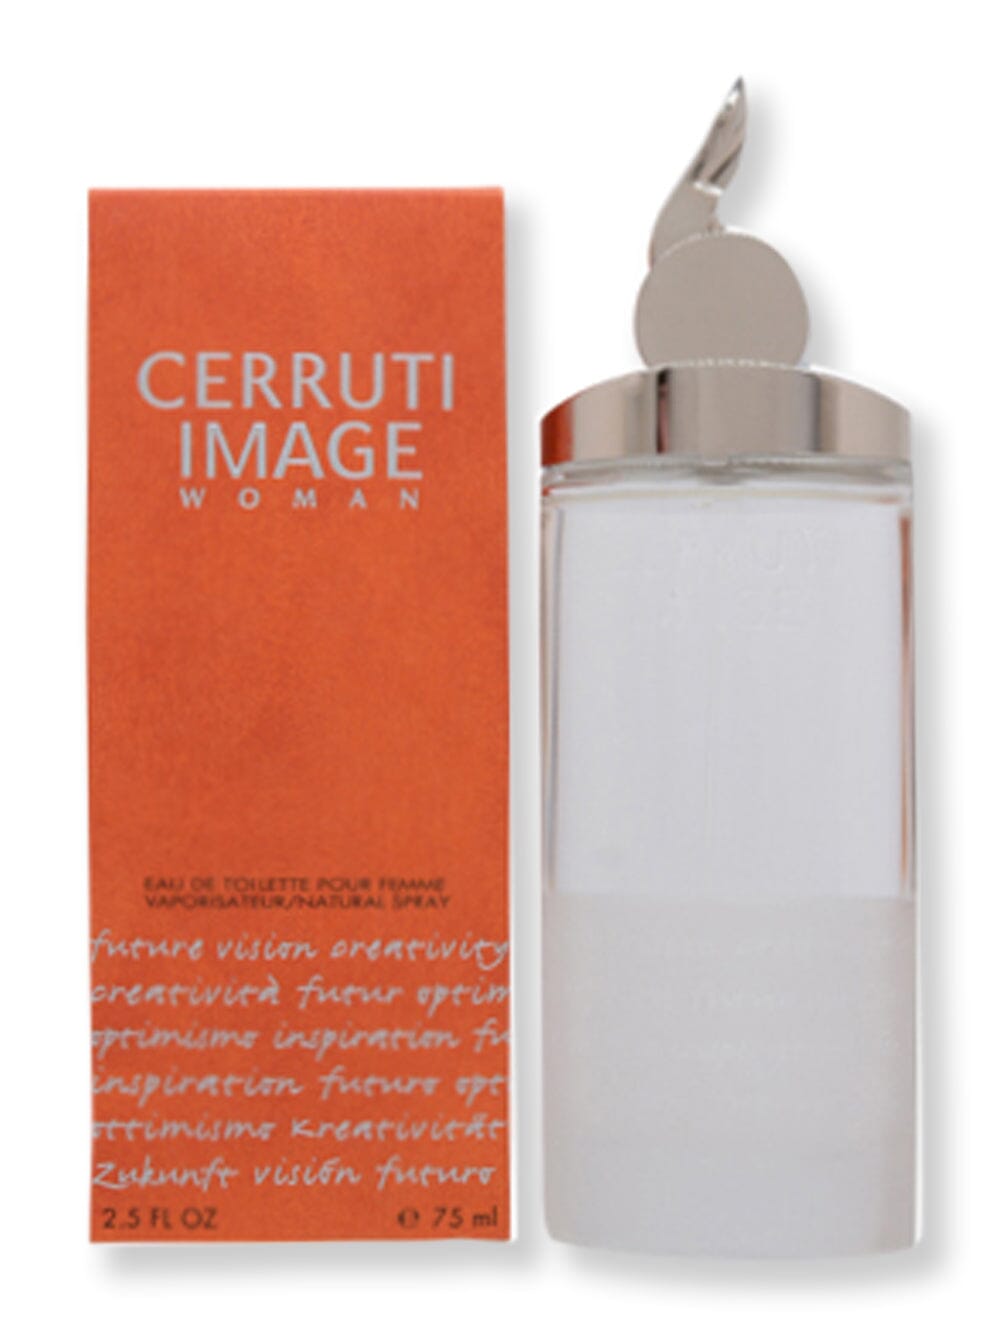 Nino Cerruti Nino Cerruti Image Woman EDT Spray 2.5 oz75 ml Perfume 